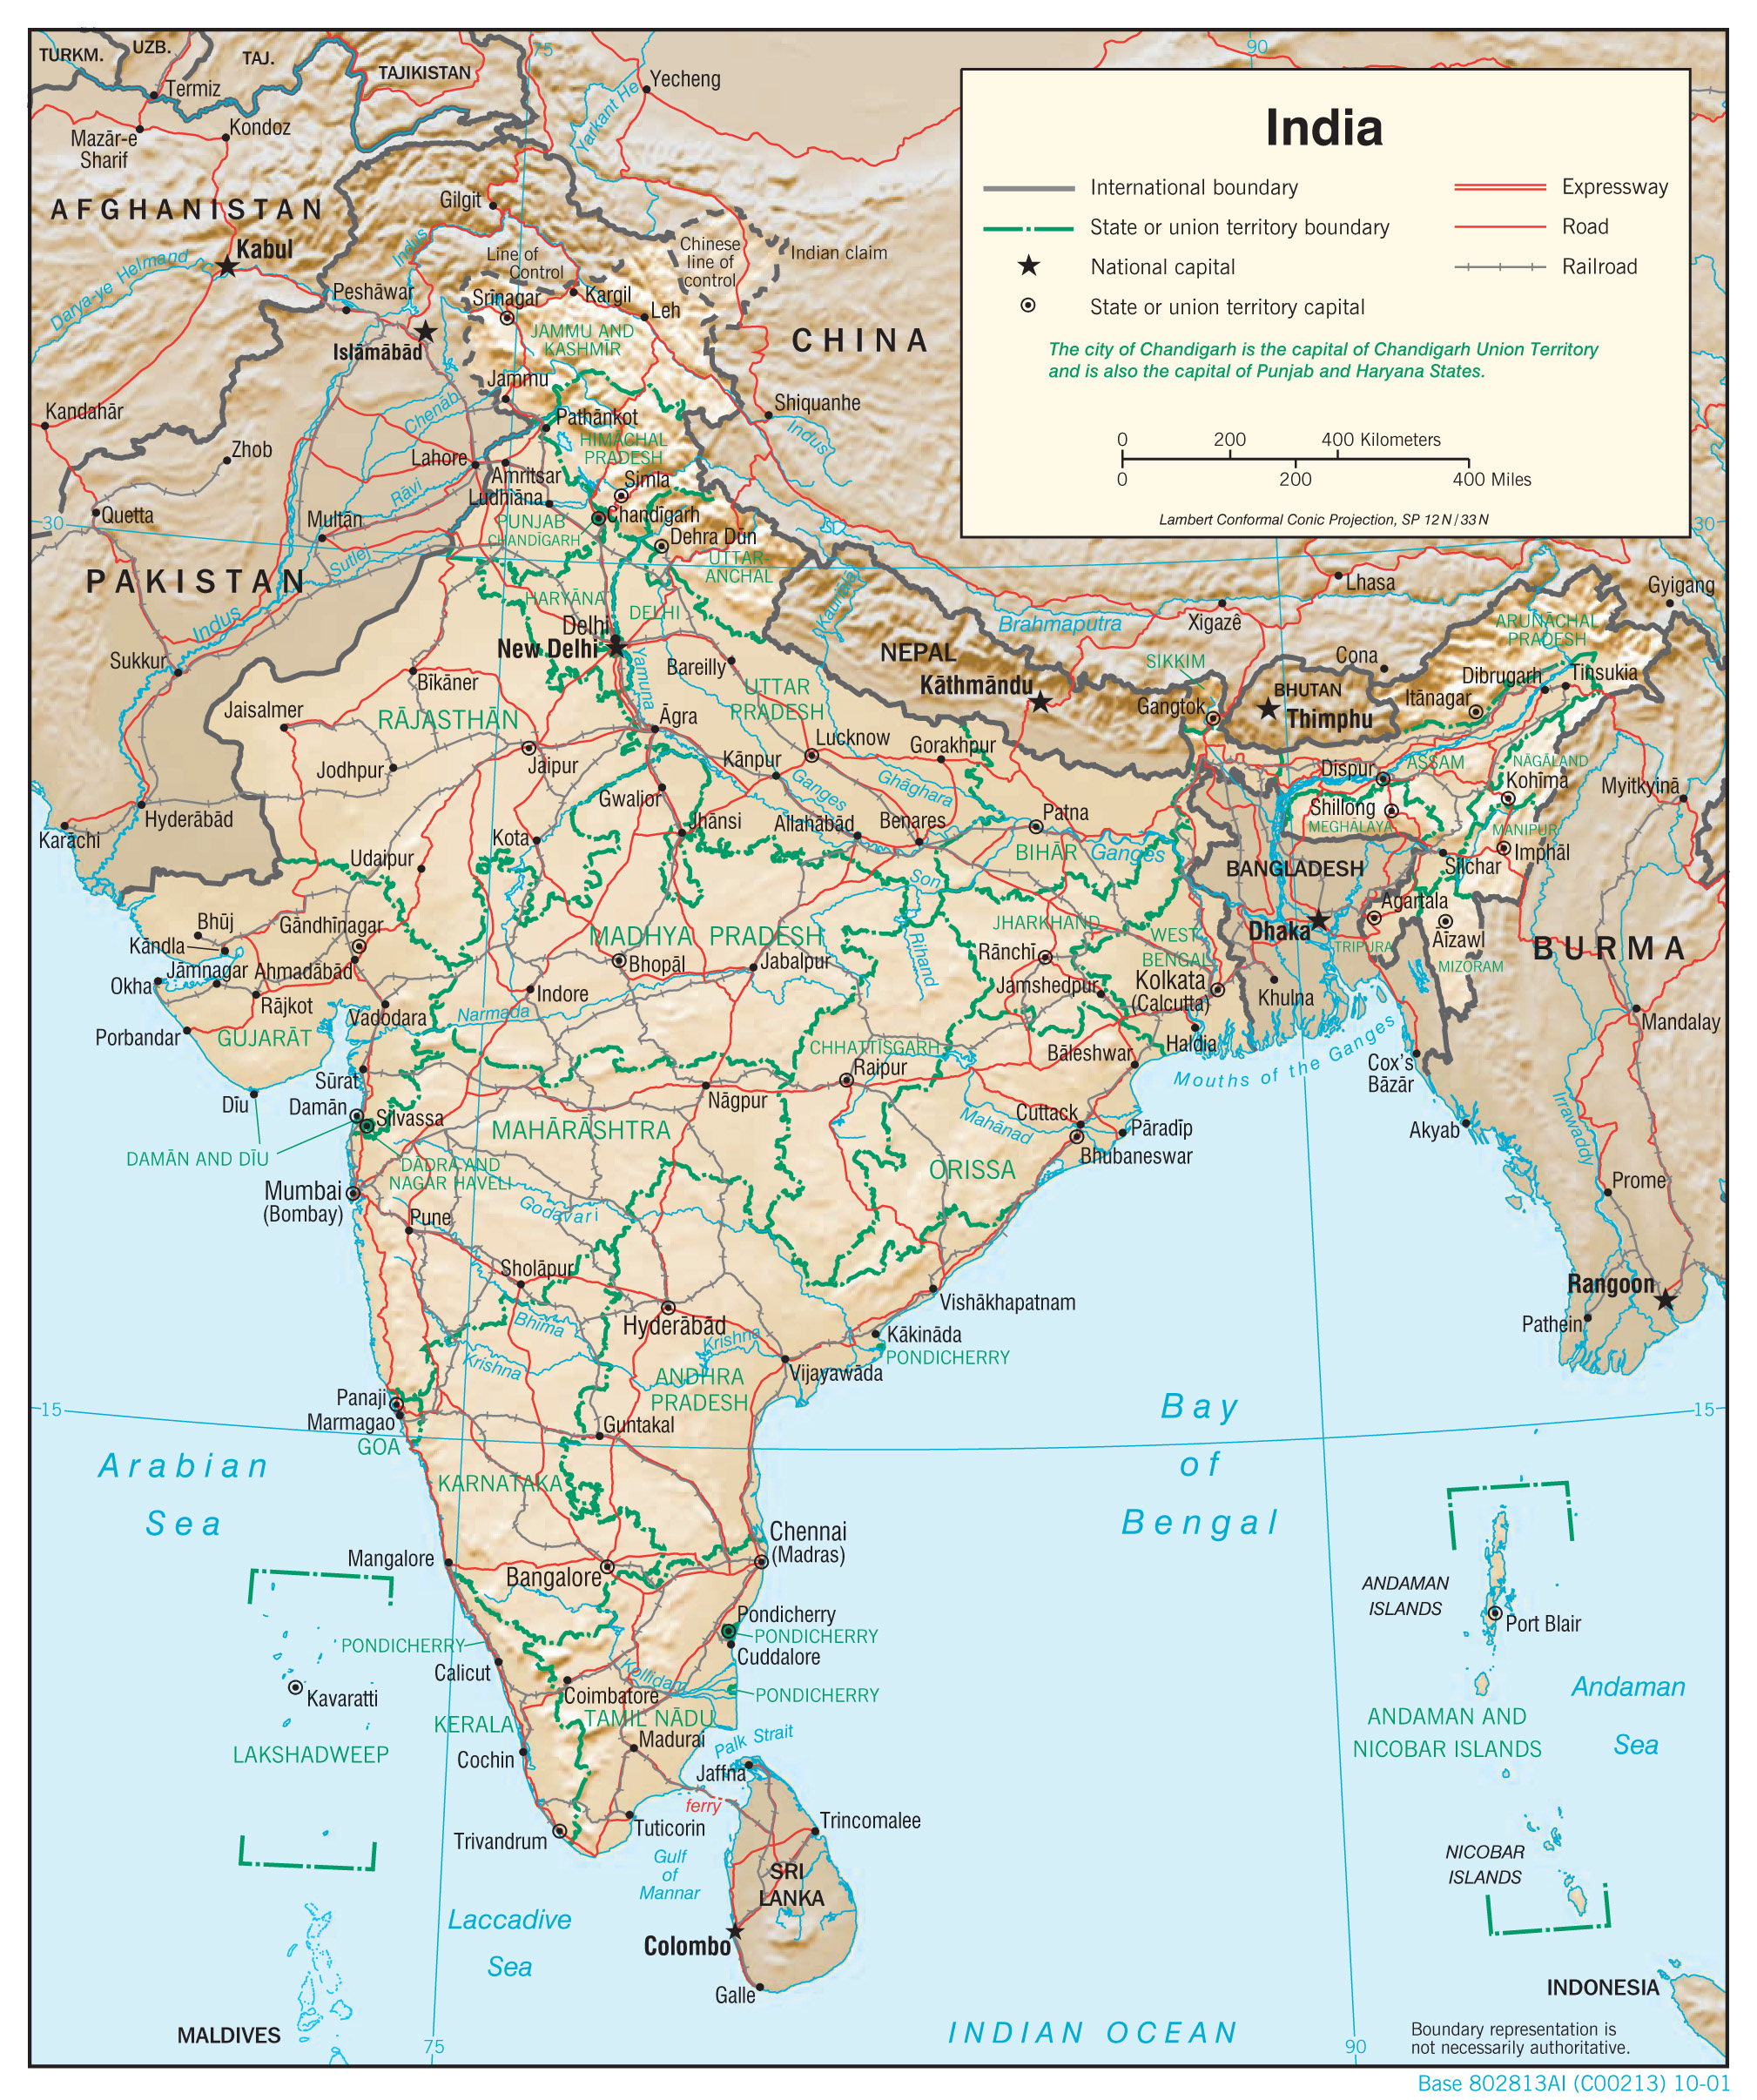 Bản đồ ấn độ mới nhất: Dẫn đầu xu hướng với bản đồ mới nhất về Ấn Độ. Được cập nhật liên tục với thông tin mới nhất, bản đồ sẽ giúp bạn tìm hiểu về đất nước này một cách hoàn hảo và chính xác.